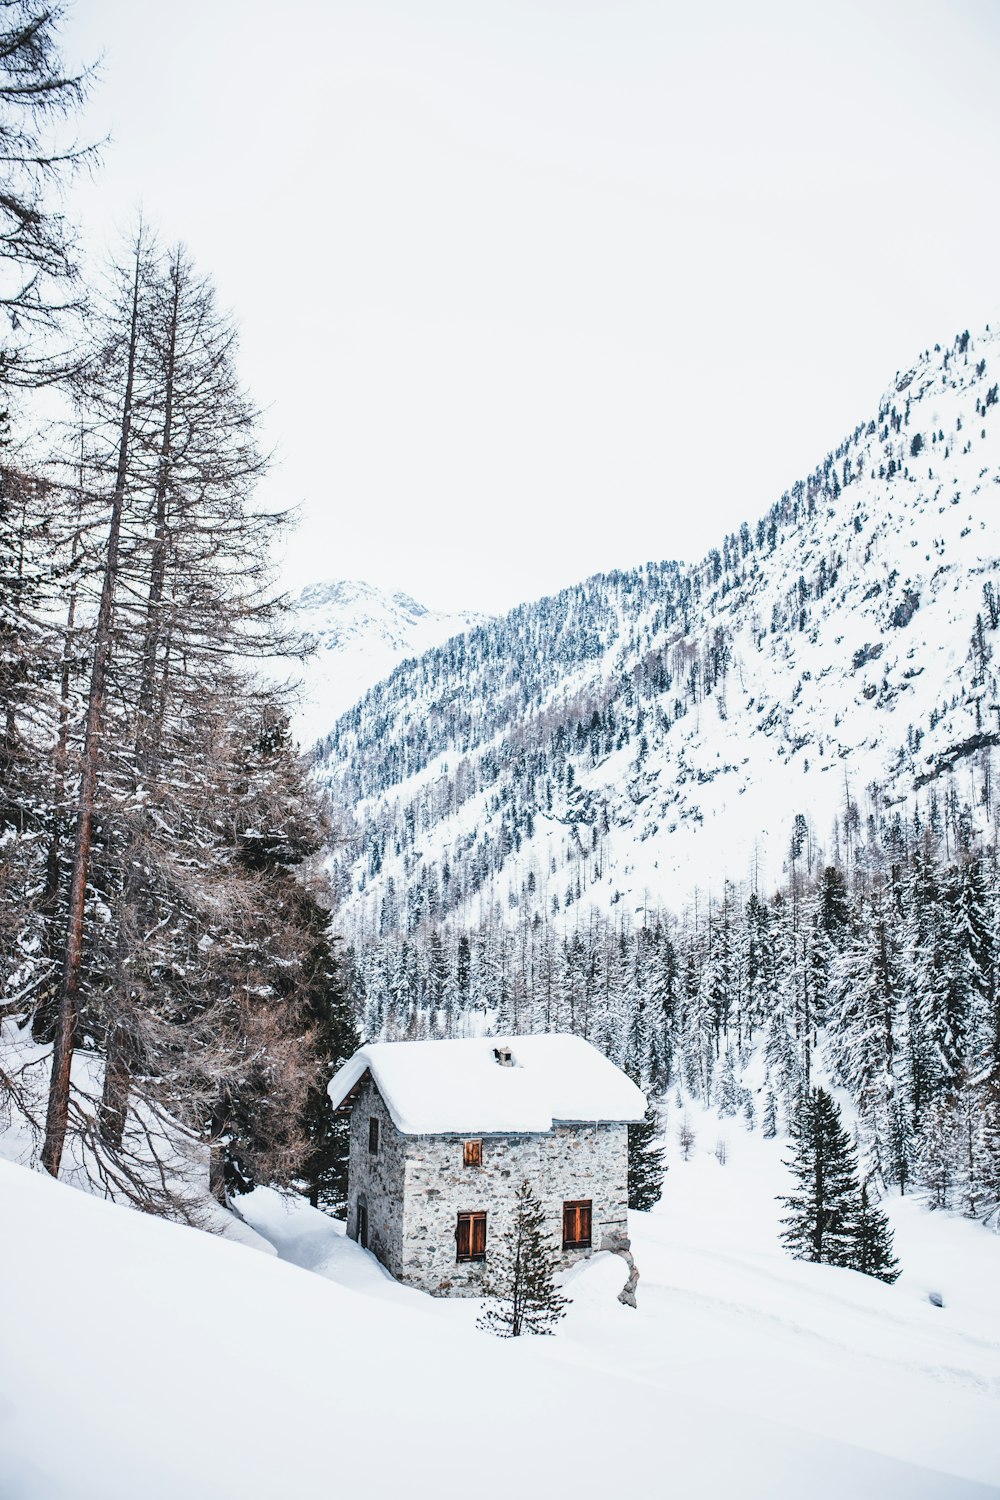 casa coberta de neve perto de árvores e montanha durante o dia